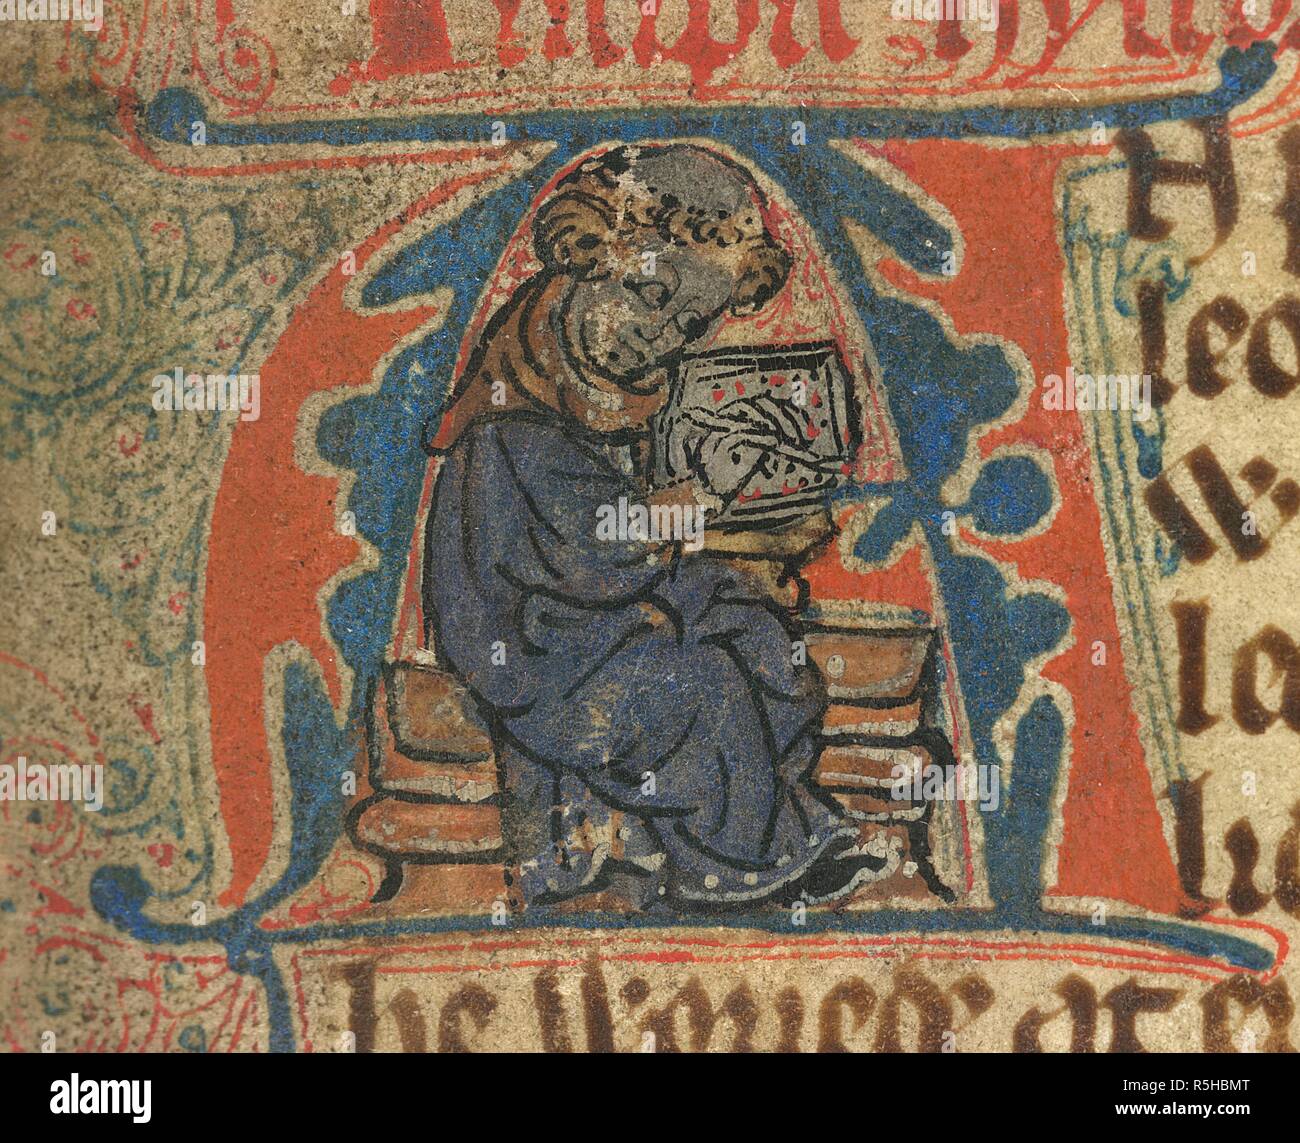 Layamon escrito. Brut. Areley, co. Worcs?; circa 1300-1325. [Miniatura] "A"  inicial, el sacerdote Layamon escrito. La apertura del poema épico,  narrando la historia de Gran Bretaña desde la historia de Brutus de